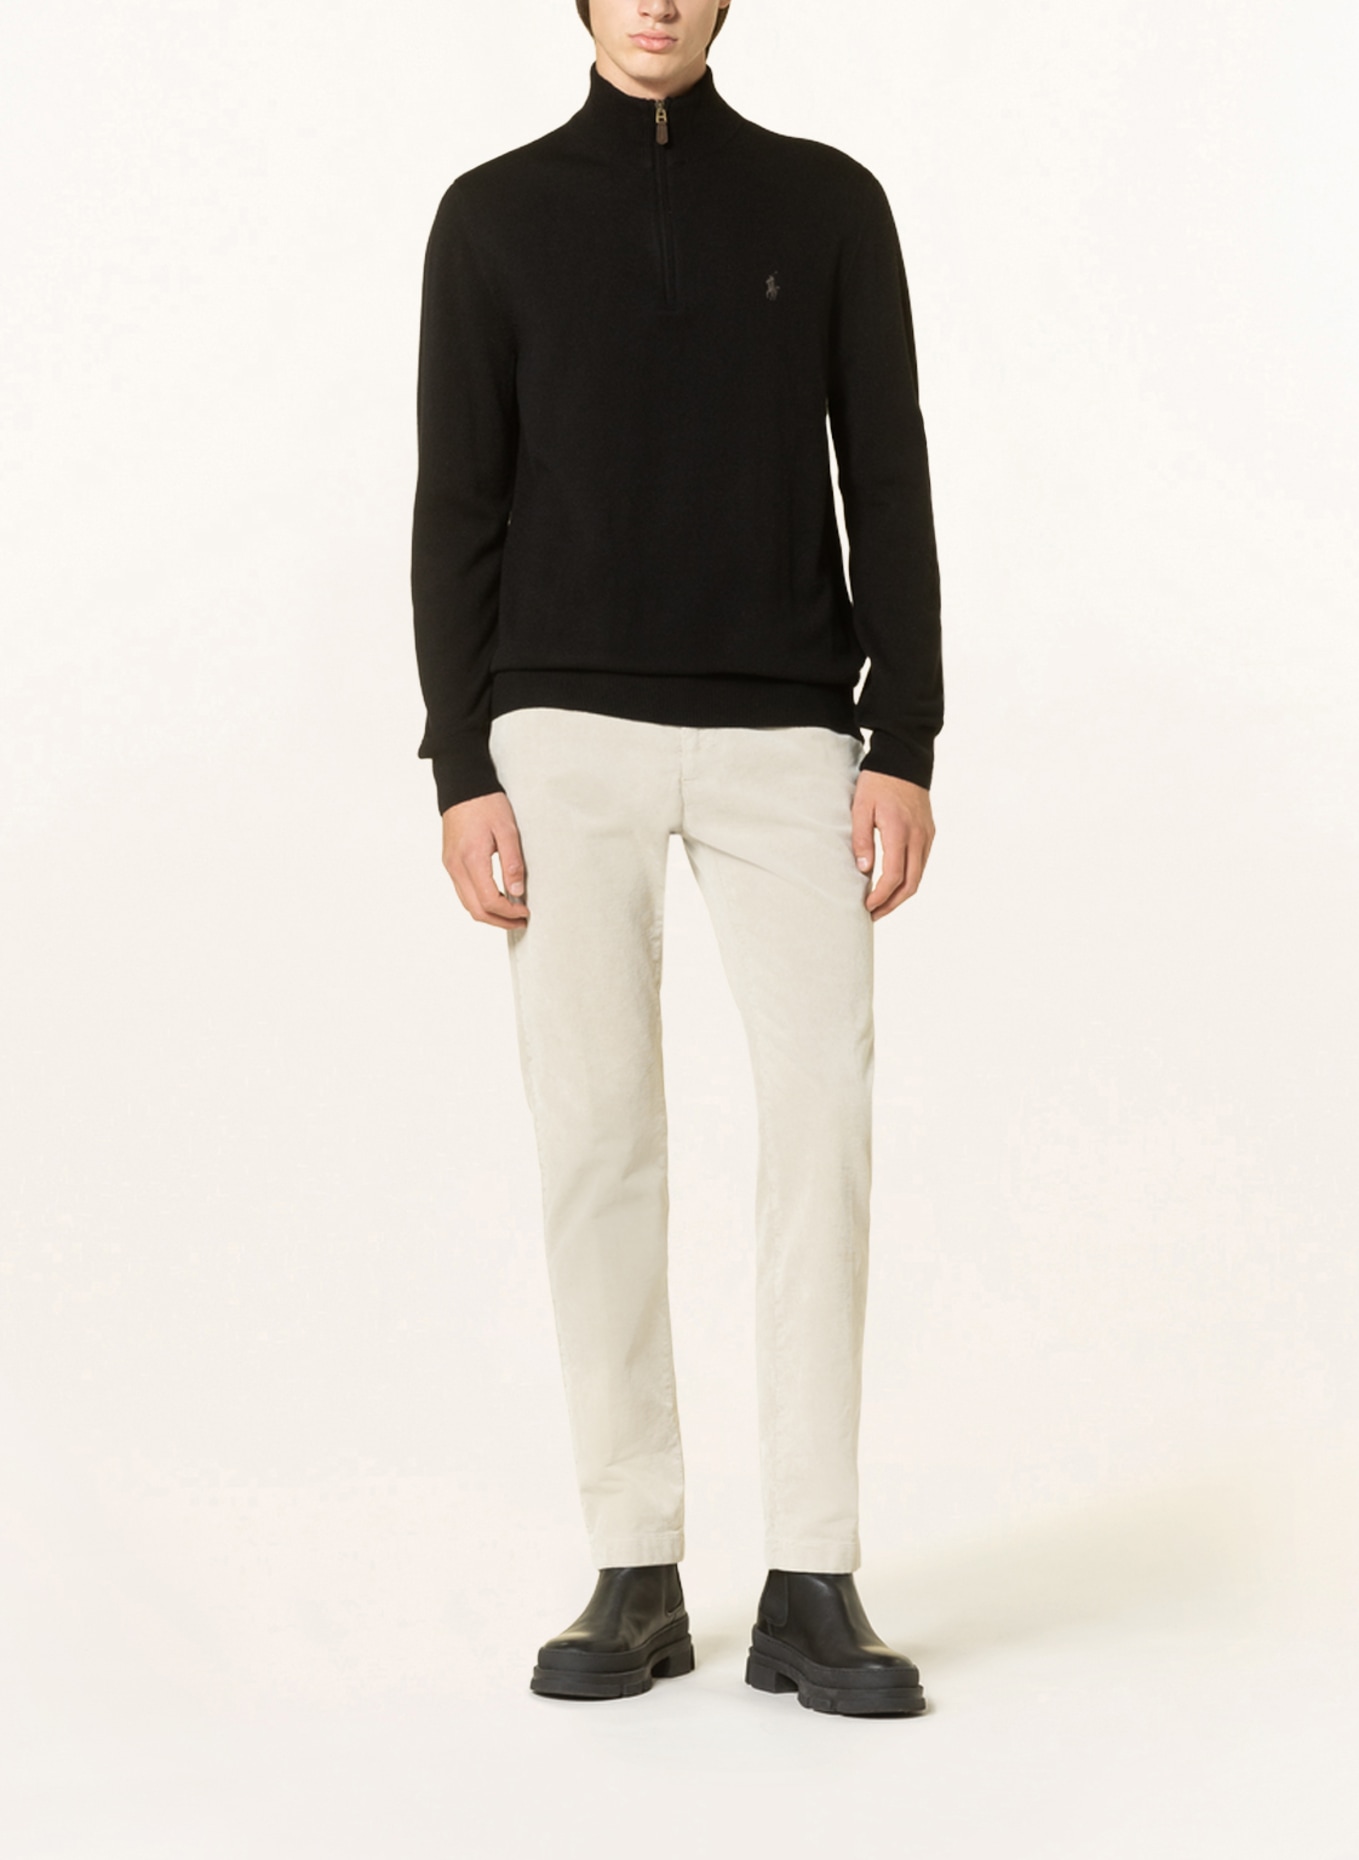 POLO RALPH LAUREN Half-zip sweater, Color: BLACK (Image 2)